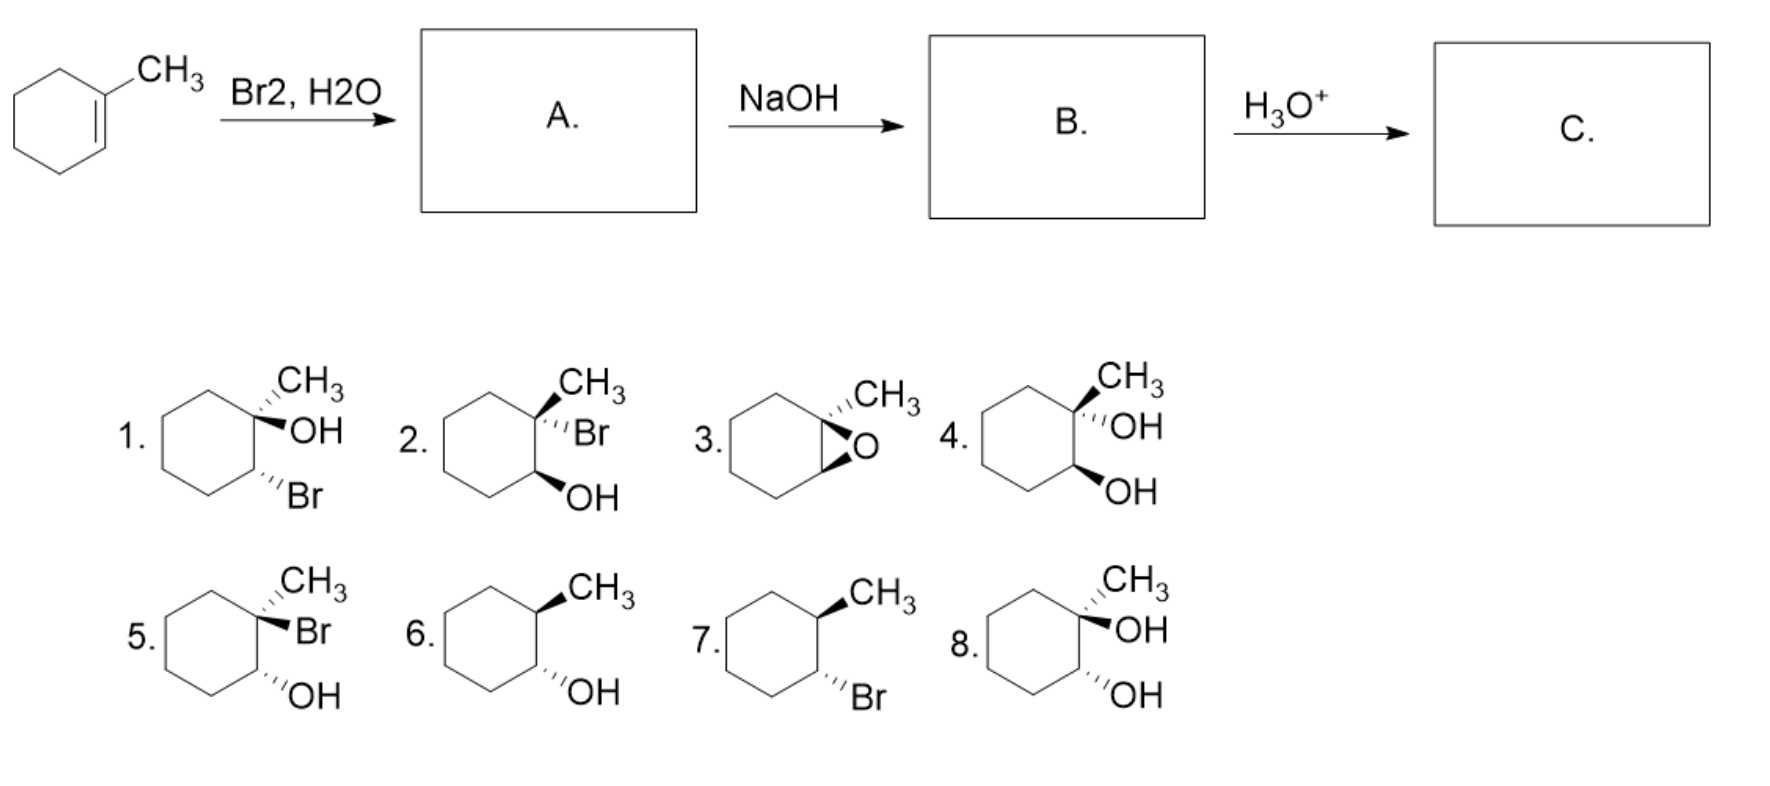 Циклогексан +2br2. Бензол ch3cl. Сн2 br ch3 +h2o. Бензол + н2.